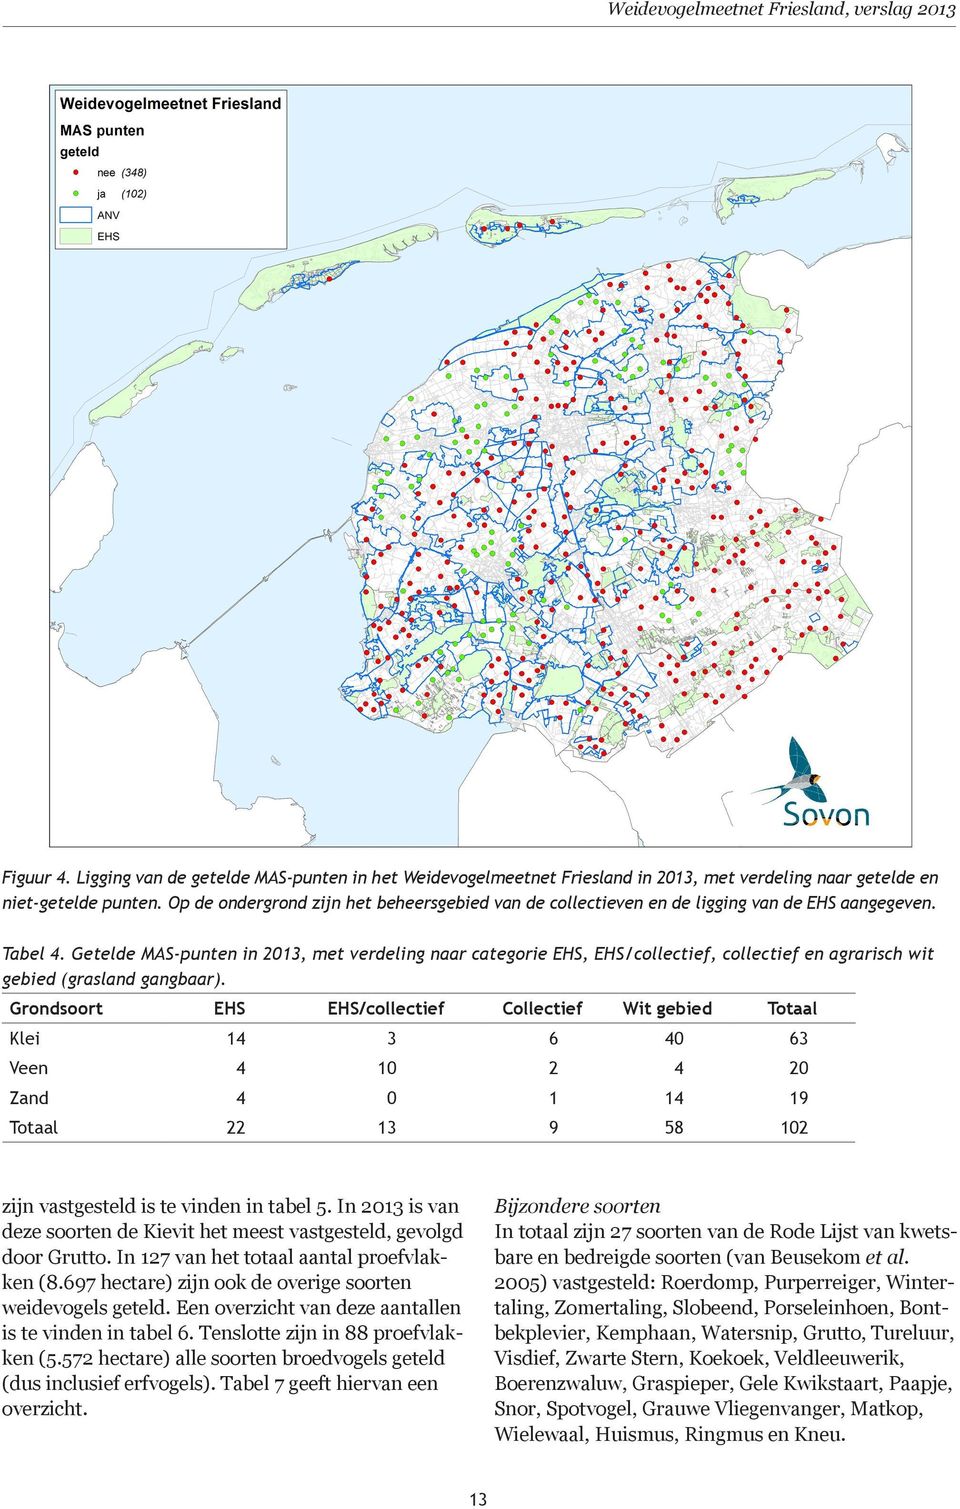 Getelde MAS-punten in 2013, met verdeling naar categorie EHS, EHS/collectief, collectief en agrarisch wit gebied (grasland gangbaar).